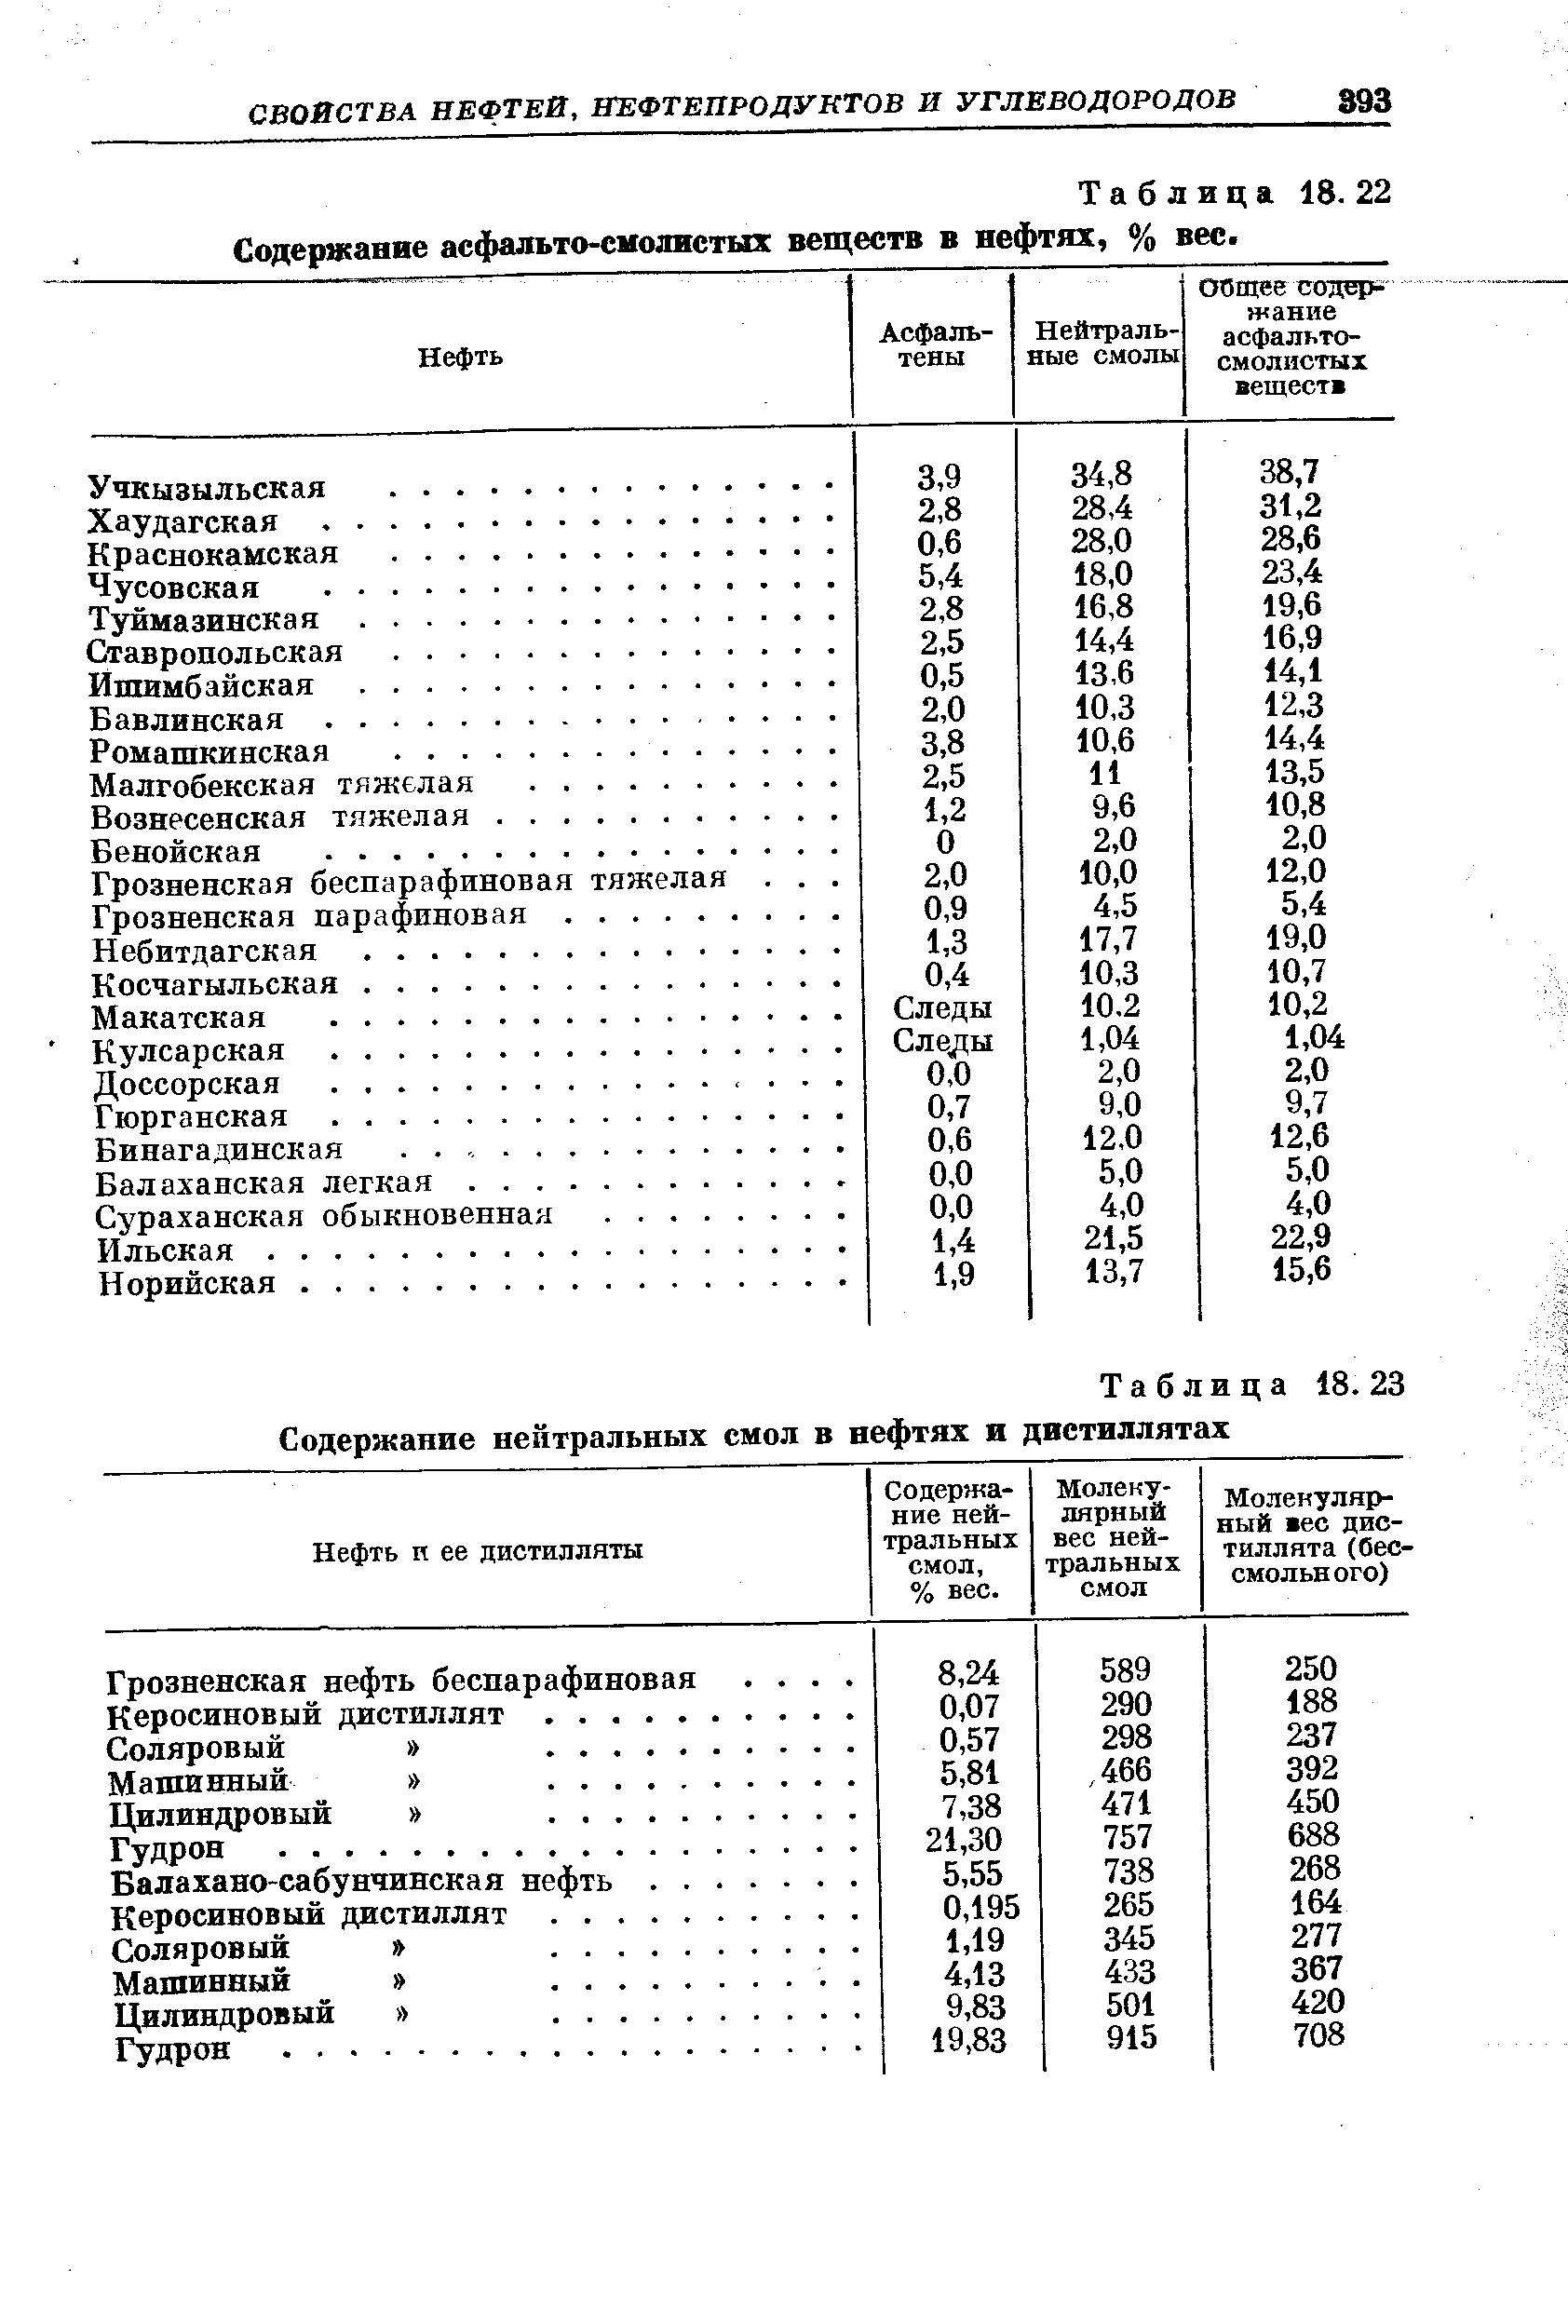 Таблица 18. 23 Содержание <a href="/info/121741">нейтральных смол</a> в нефтях и двстиллятах
